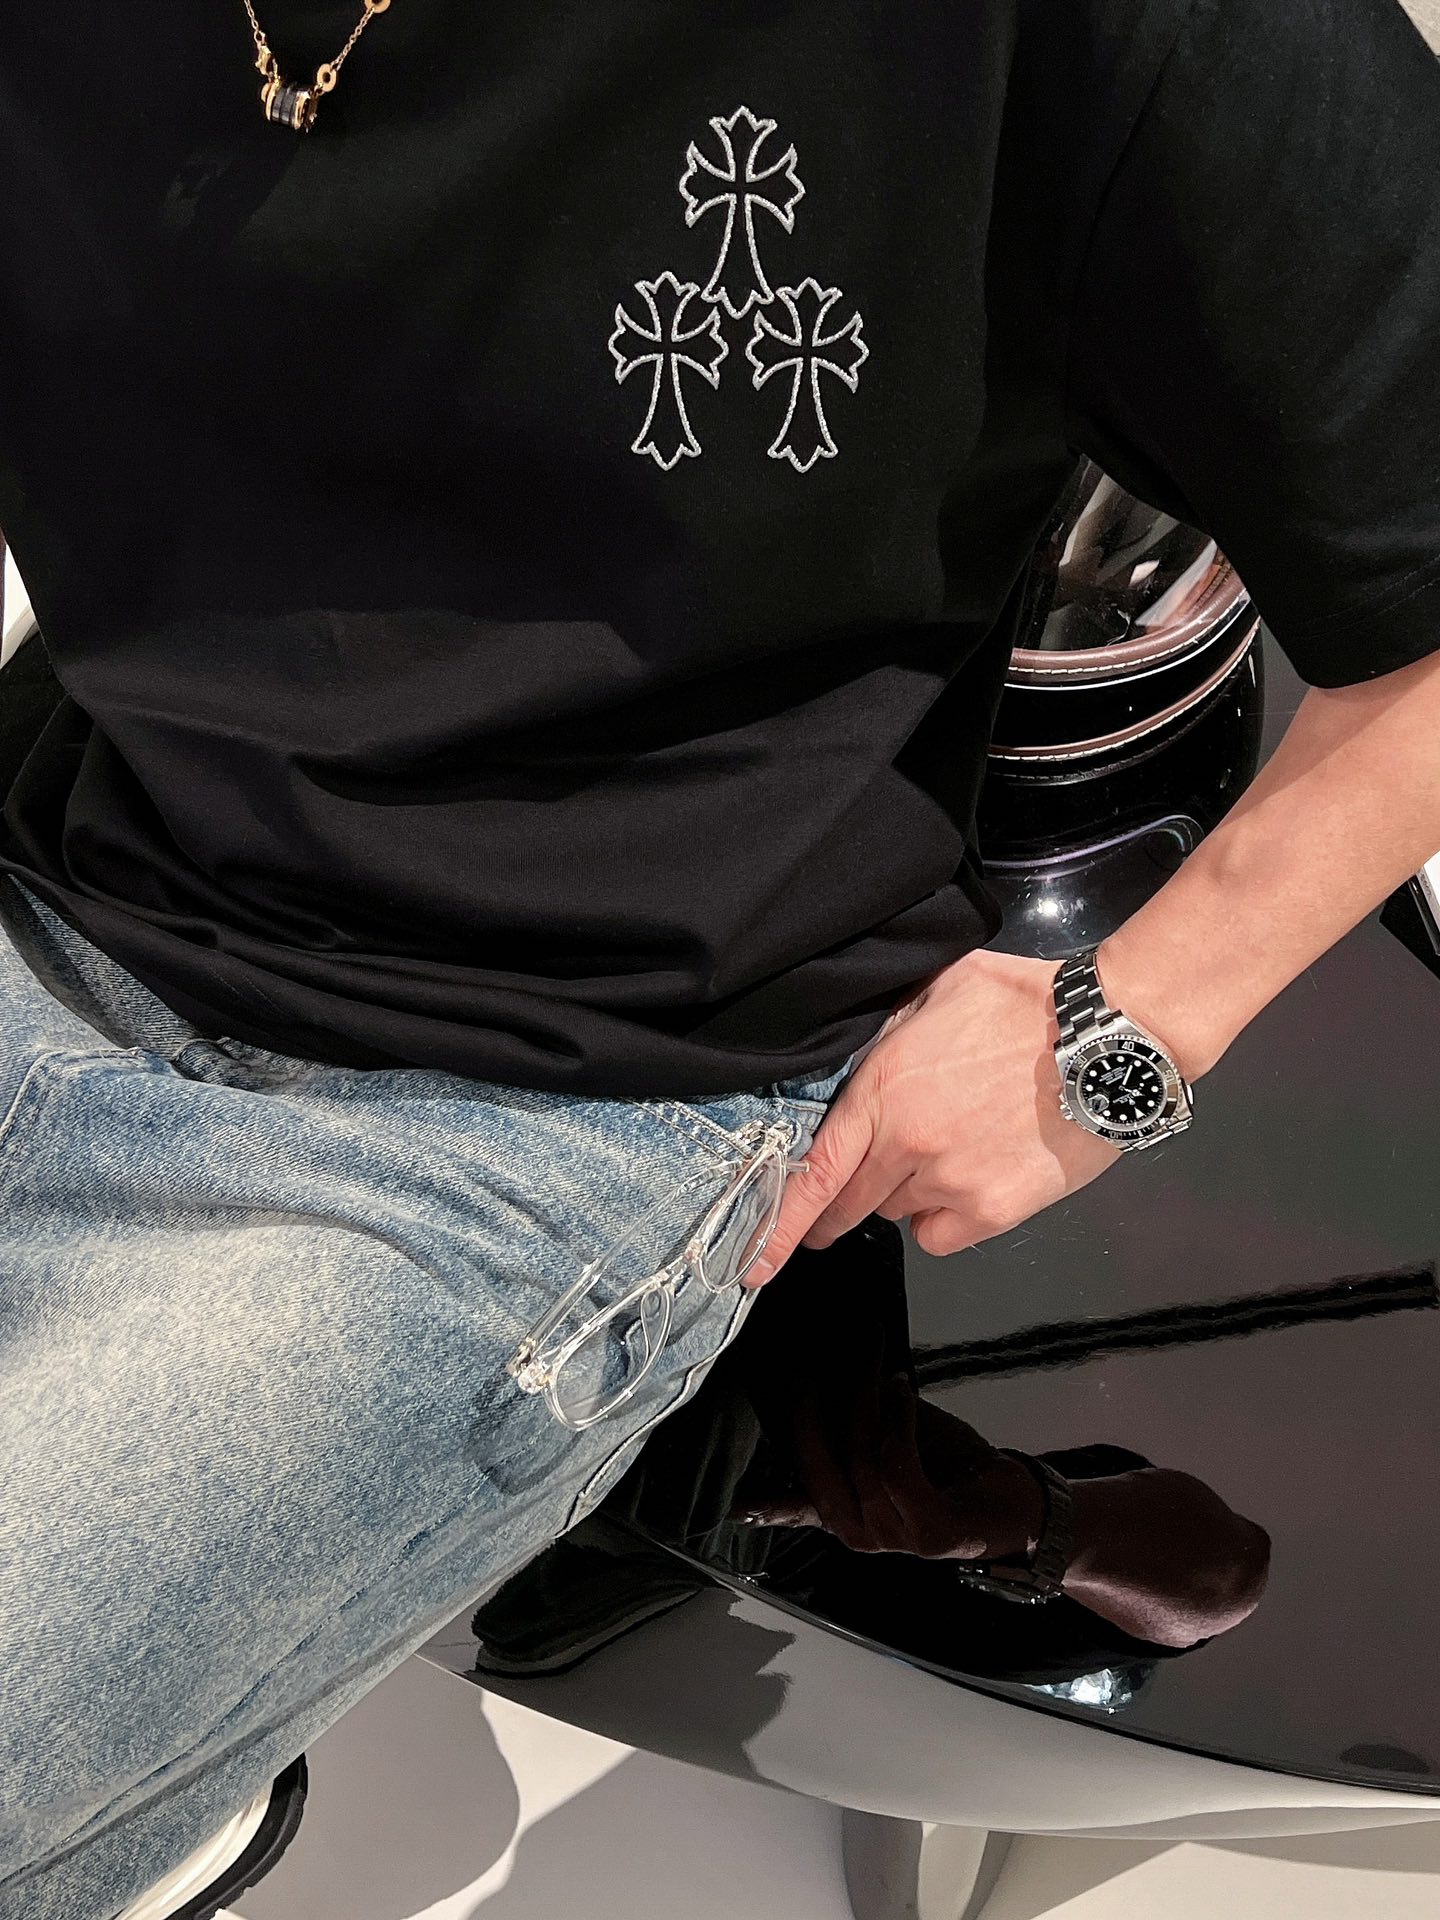 克罗心2024Ss最新款短袖T恤原标定制面料手感柔软穿着舒适做工精细.上身效果无敌帅气码数S-2xl